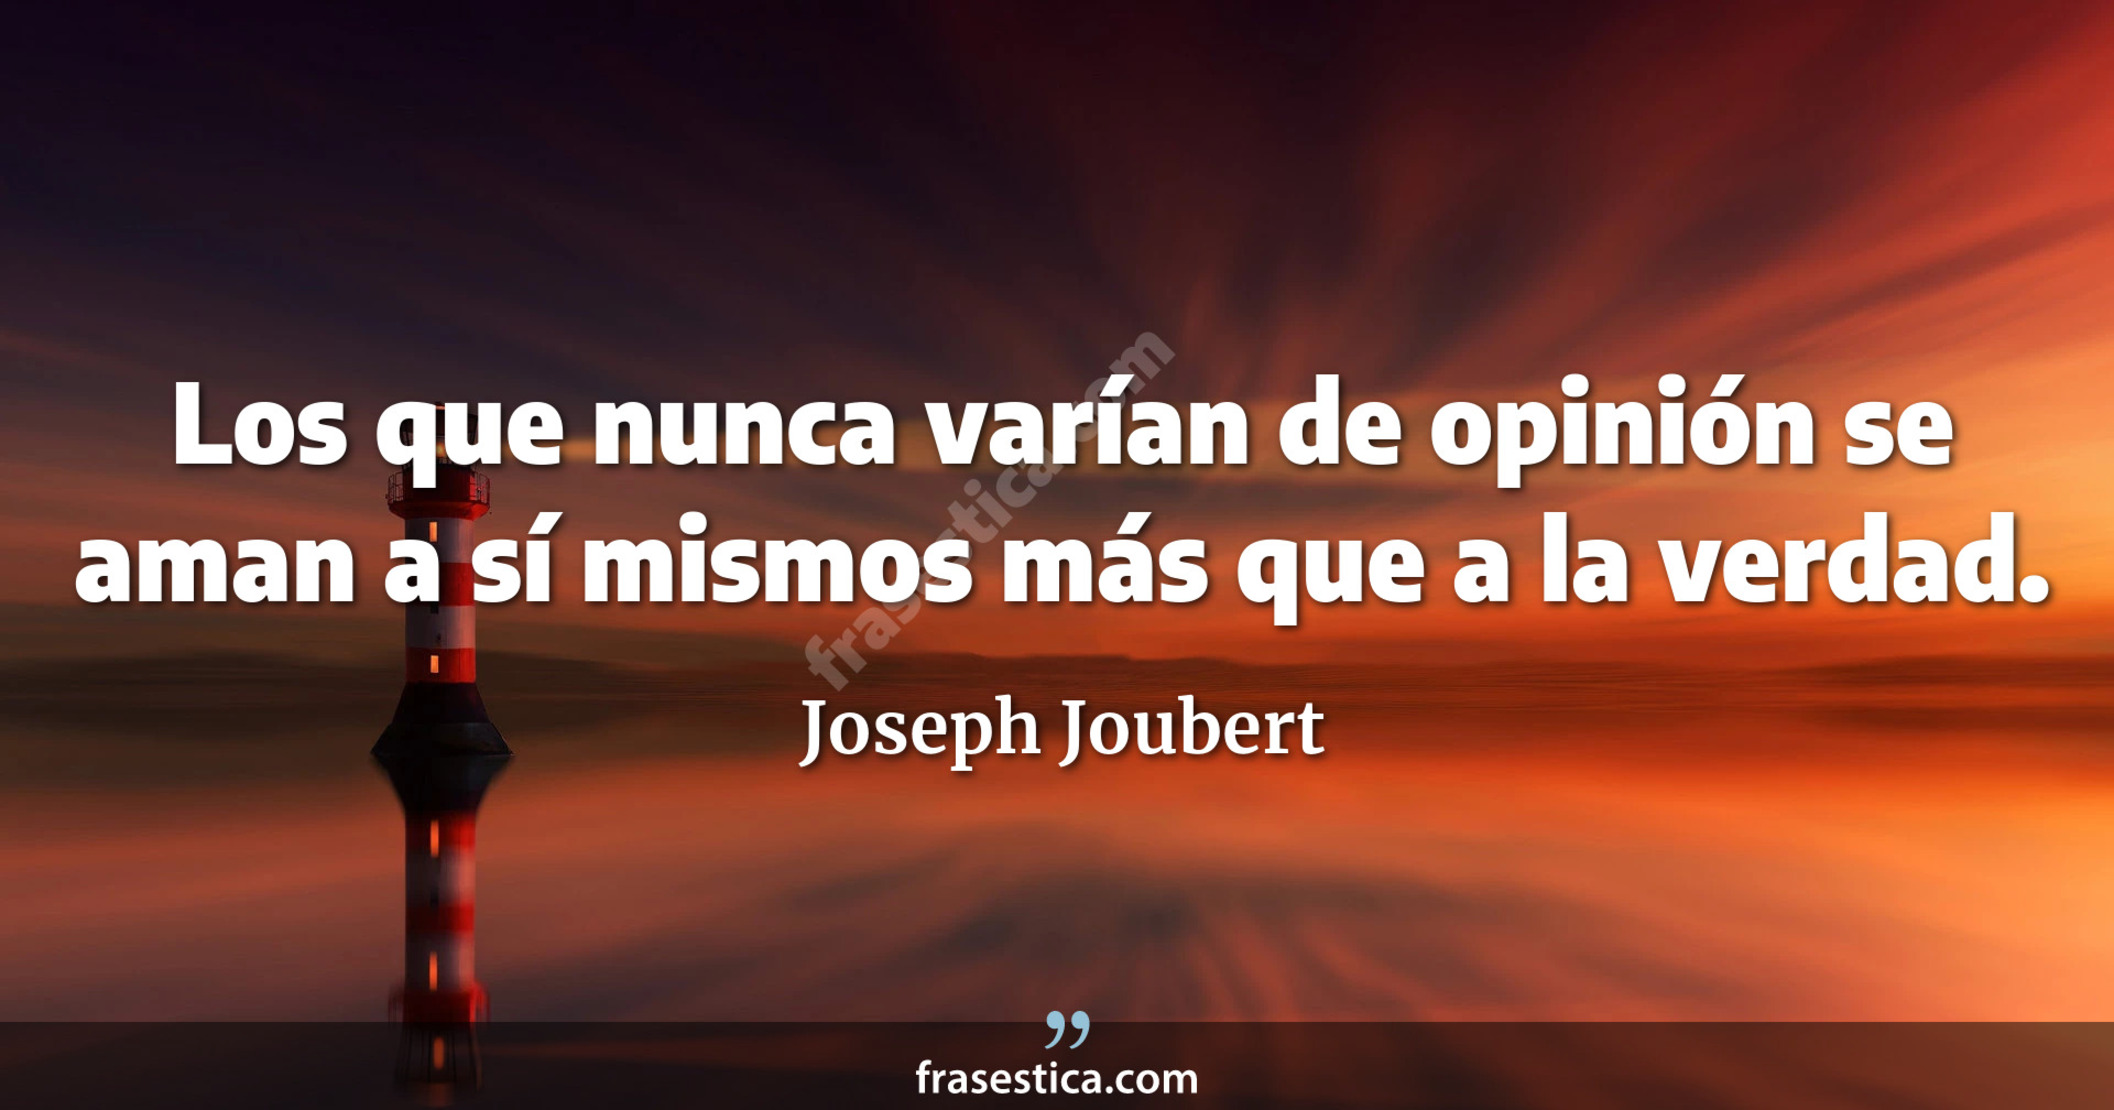 Los que nunca varían de opinión se aman a sí mismos más que a la verdad. - Joseph Joubert